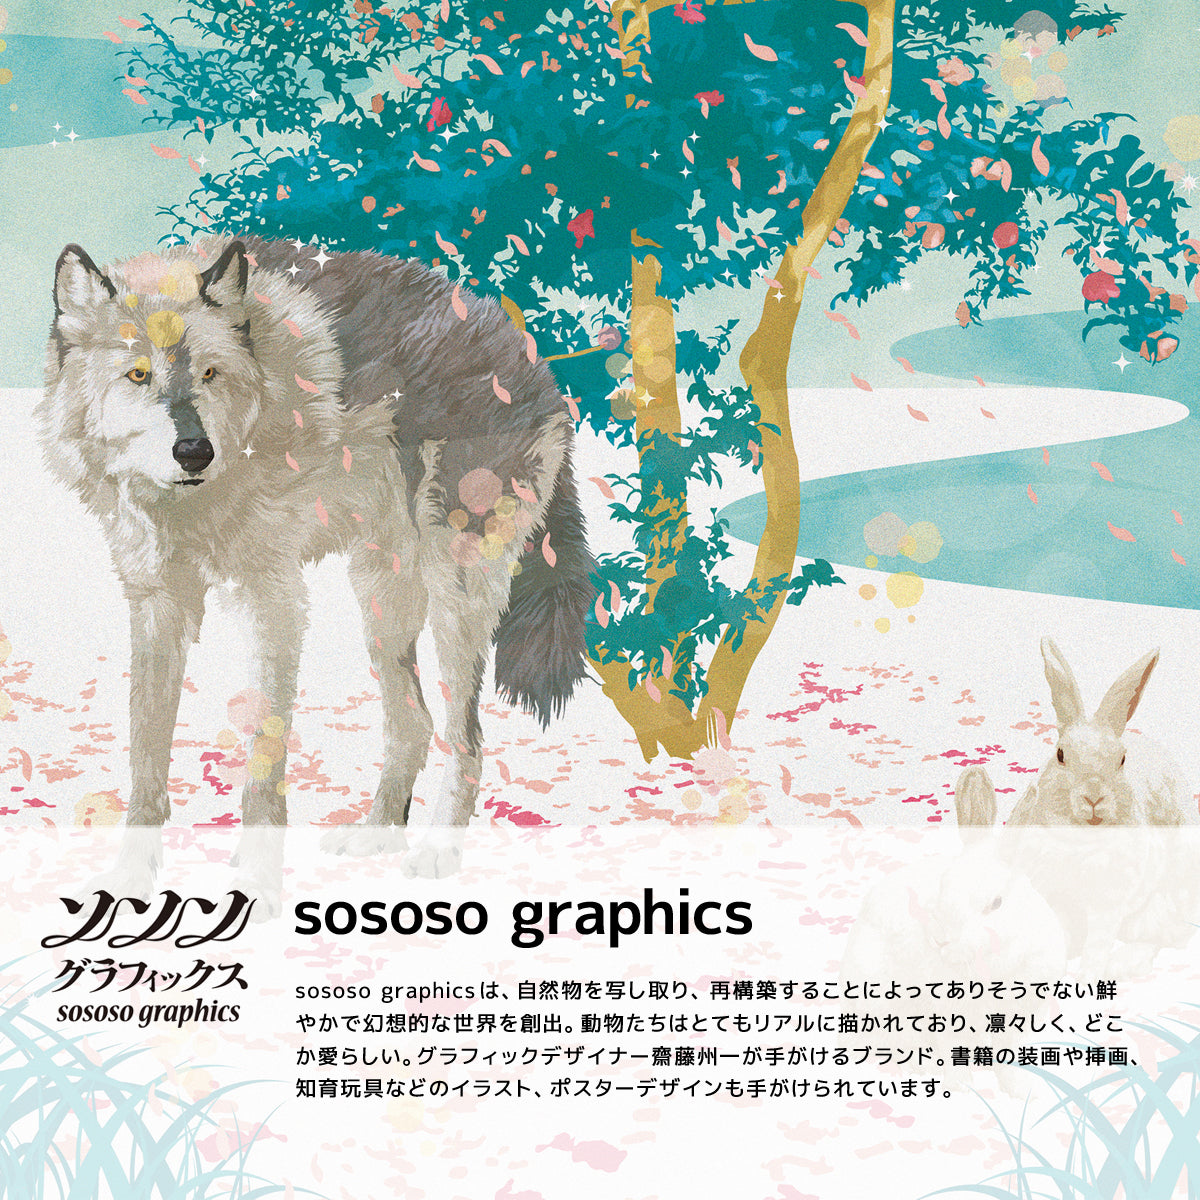 sososo graphicsは、幻想的な世界感を演出するブランドです。